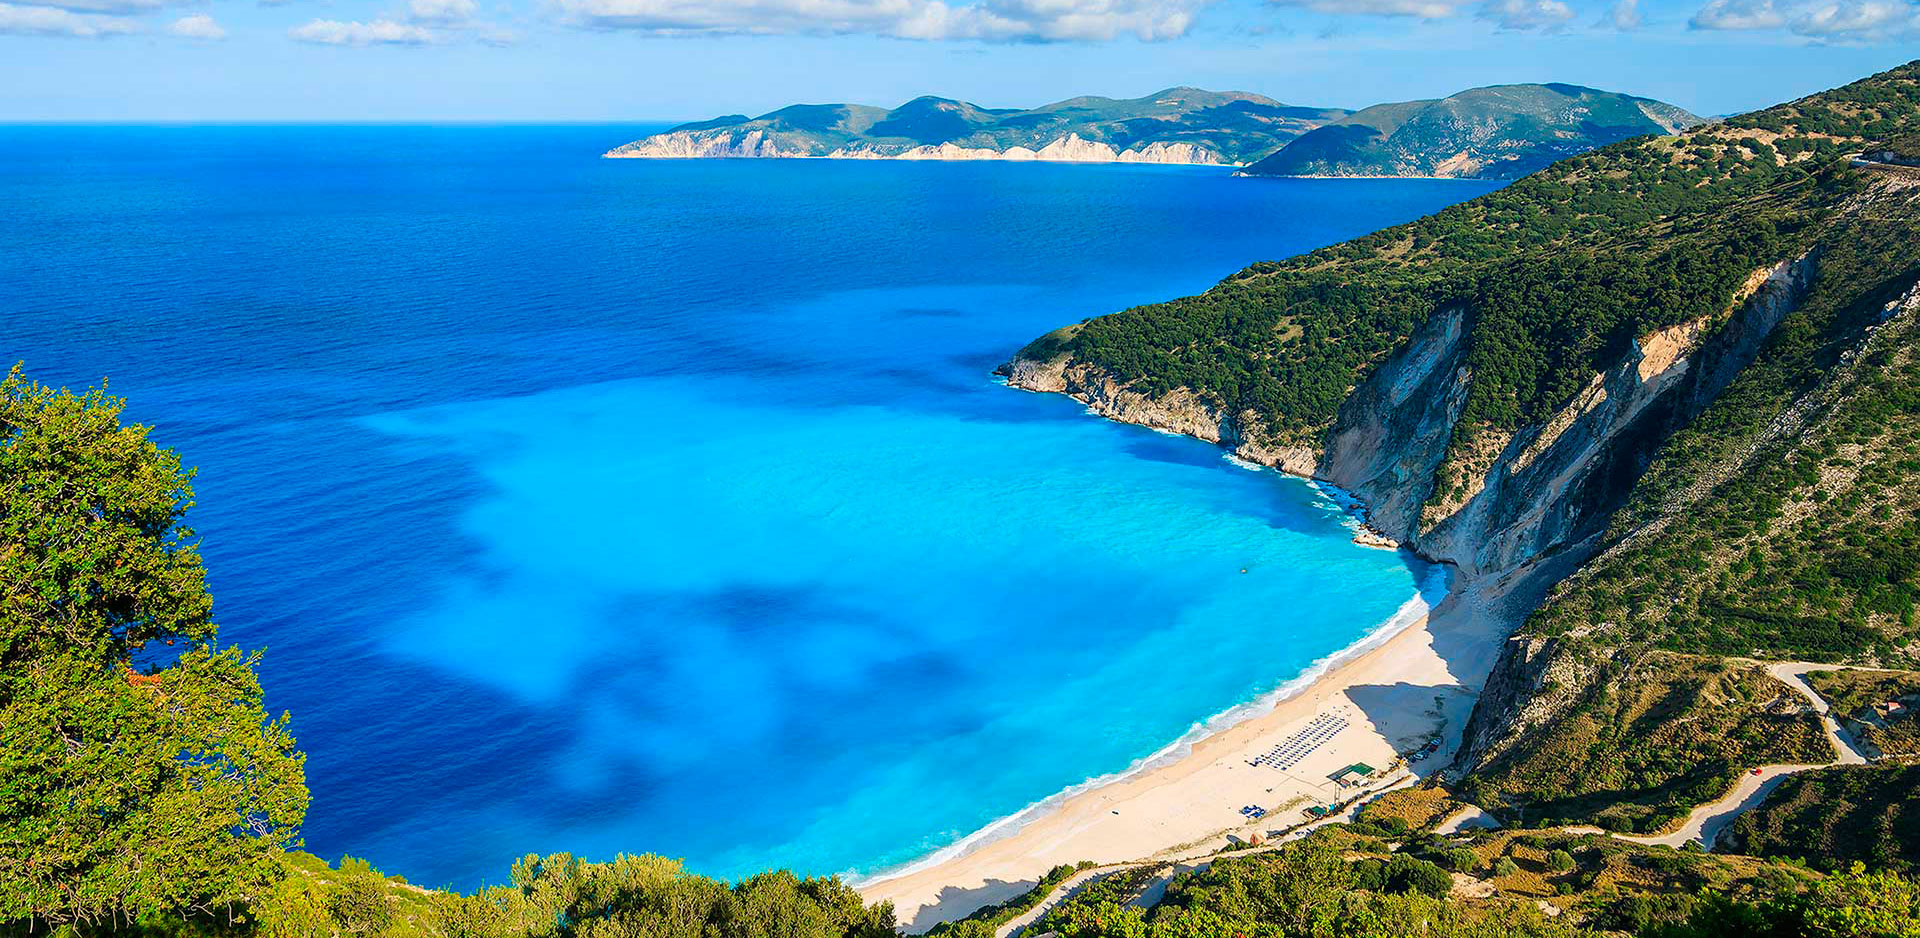 Лучшие пляжи греции: самые красивые, чистые, комфортные и безопасные места отдыха эллады